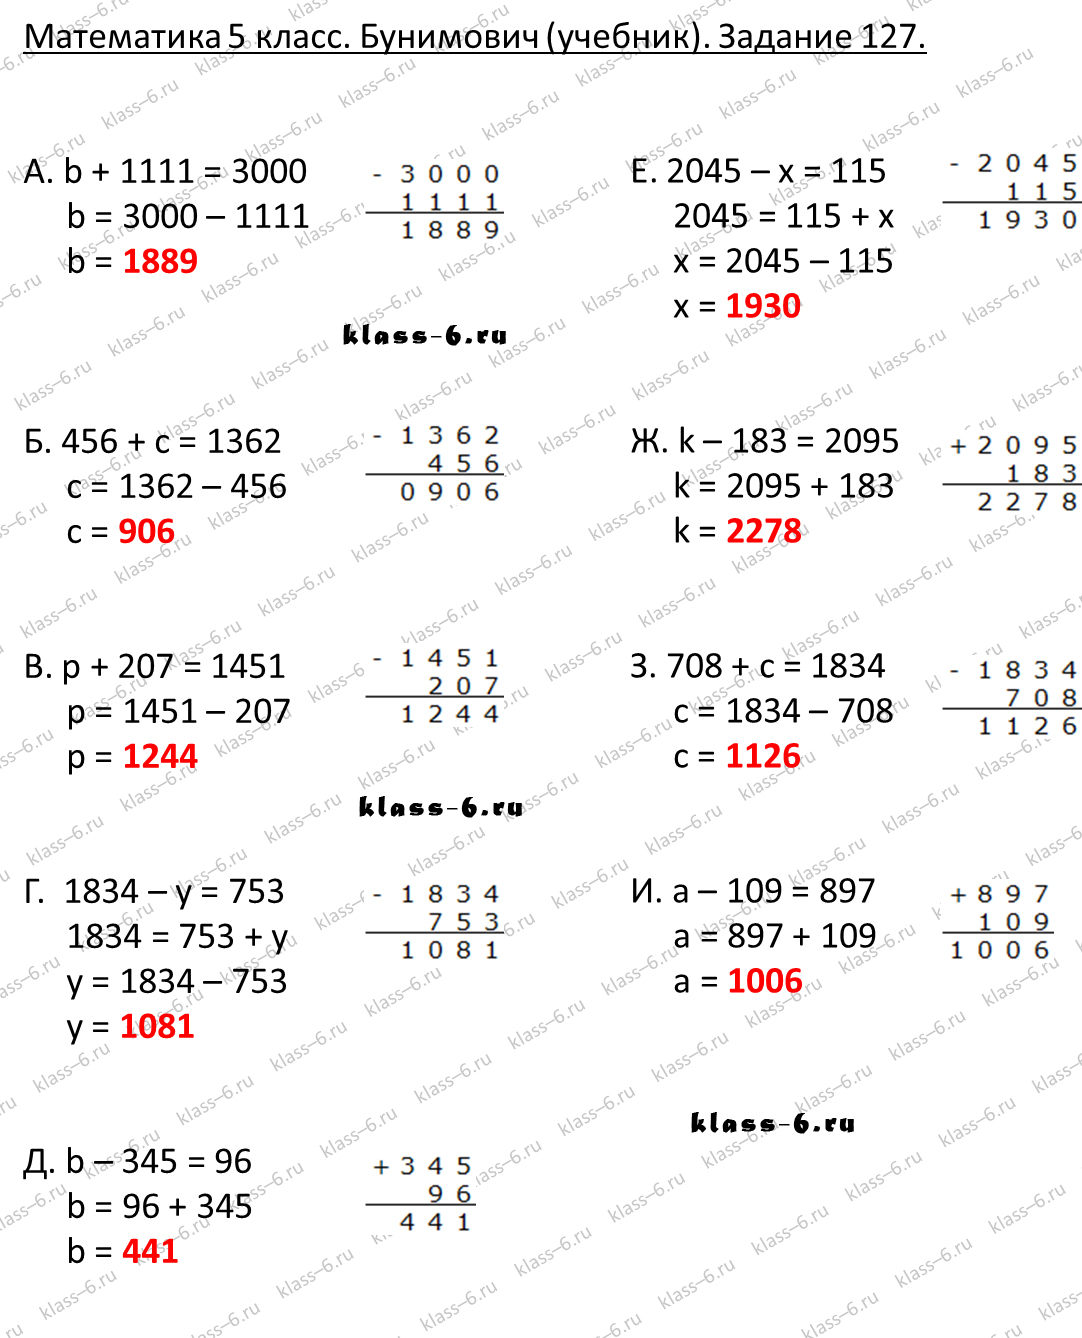 Математика 5 класс страница 127 упражнение 6.246